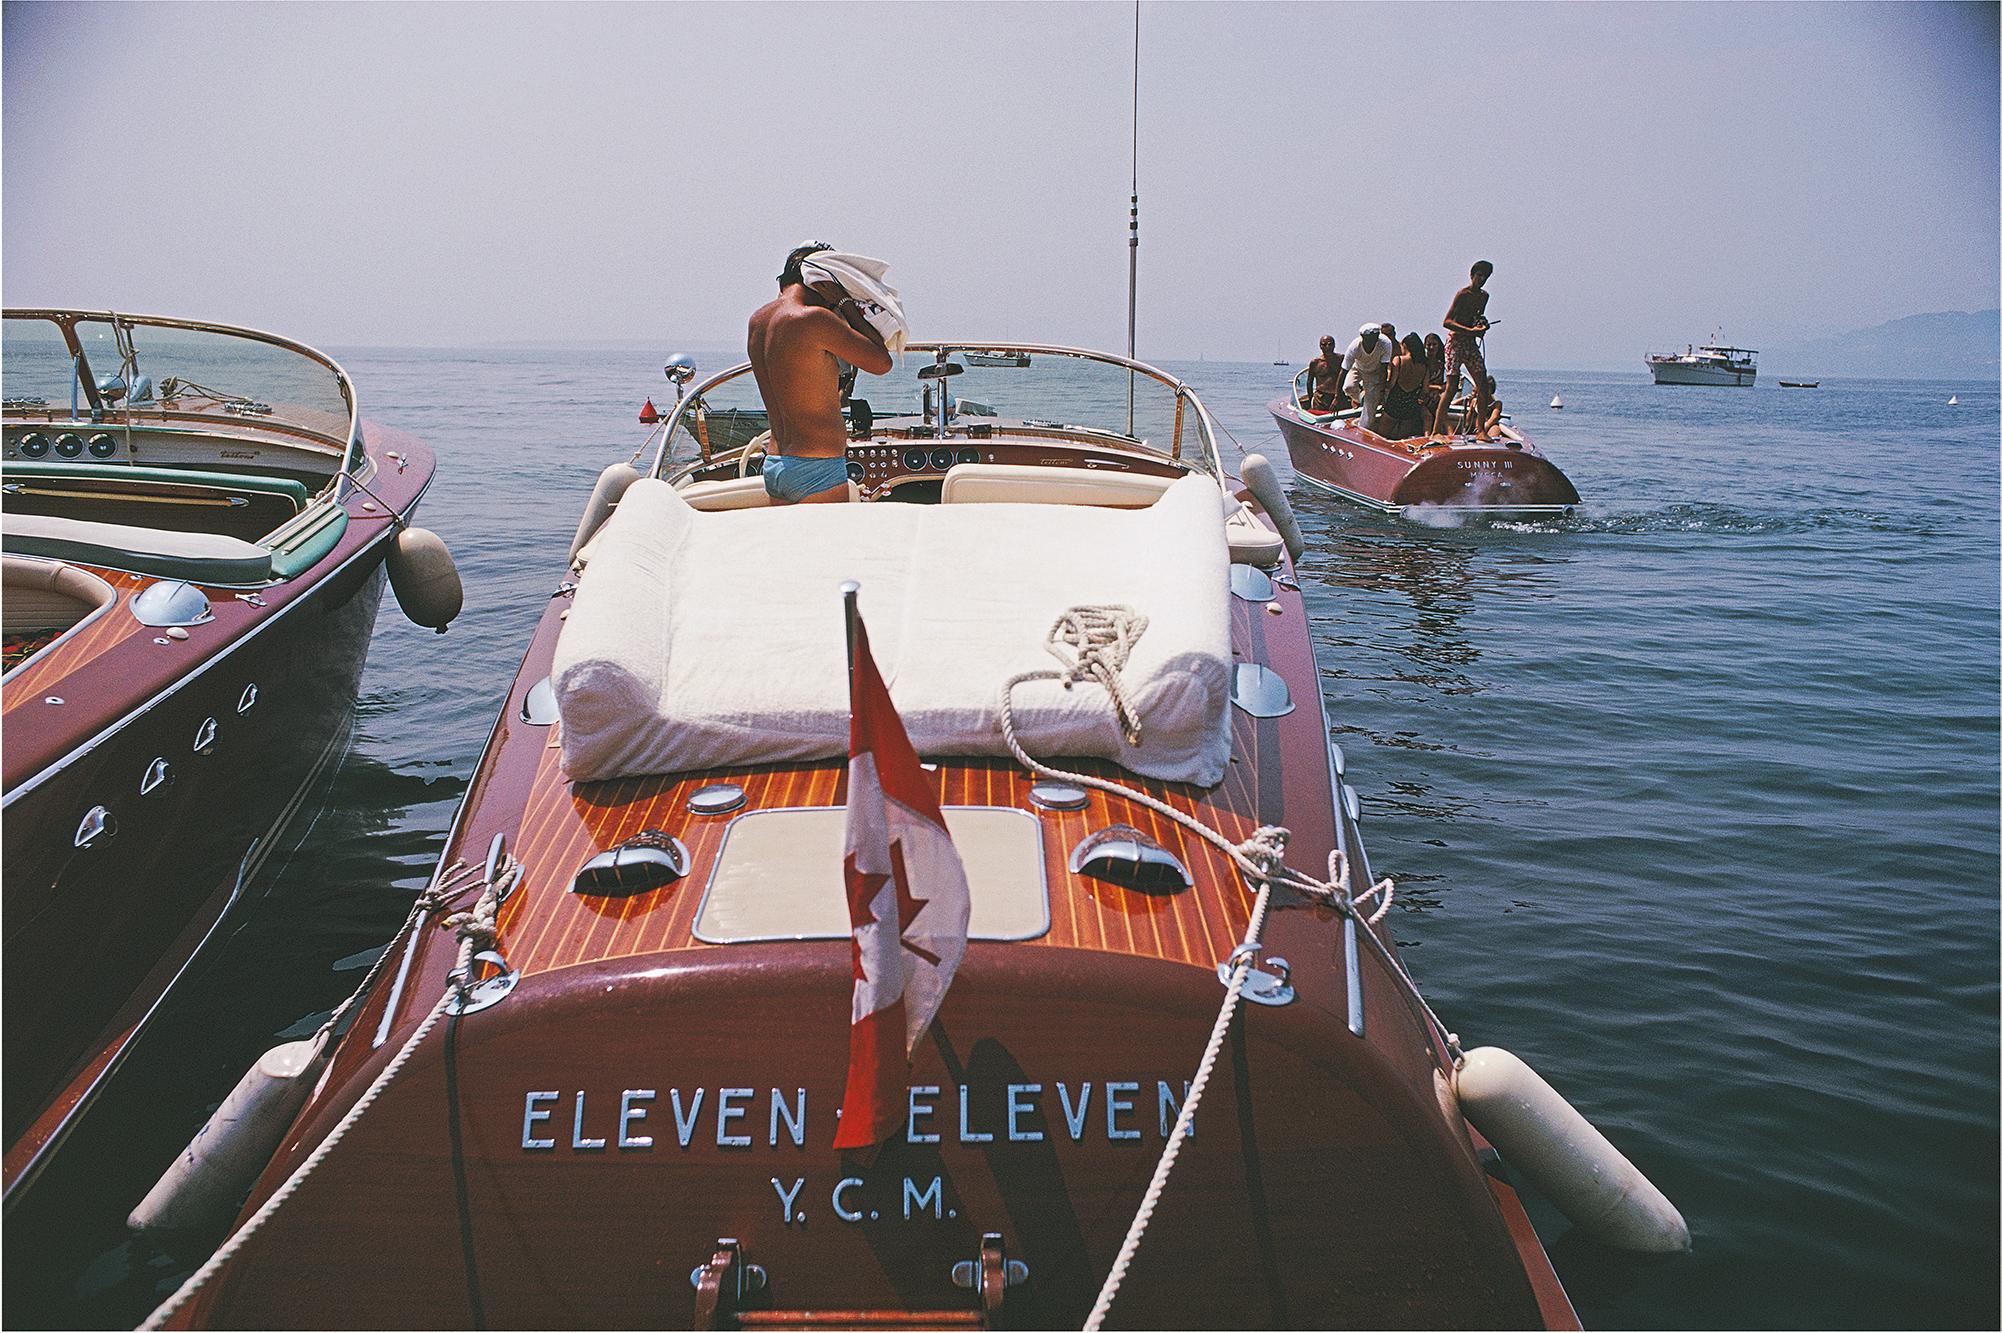 Schlanke Aarons
Motorboote in Antibes
1969 (später gedruckt)
C Druck 
Nachlassgestempelte und nummerierte Auflage von 150 Stück 
mit Echtheitszertifikat

Motorboote an der Küste in der Nähe des Hotels du Cap-Eden-Roc in Antibes an der Côte d'Azur,